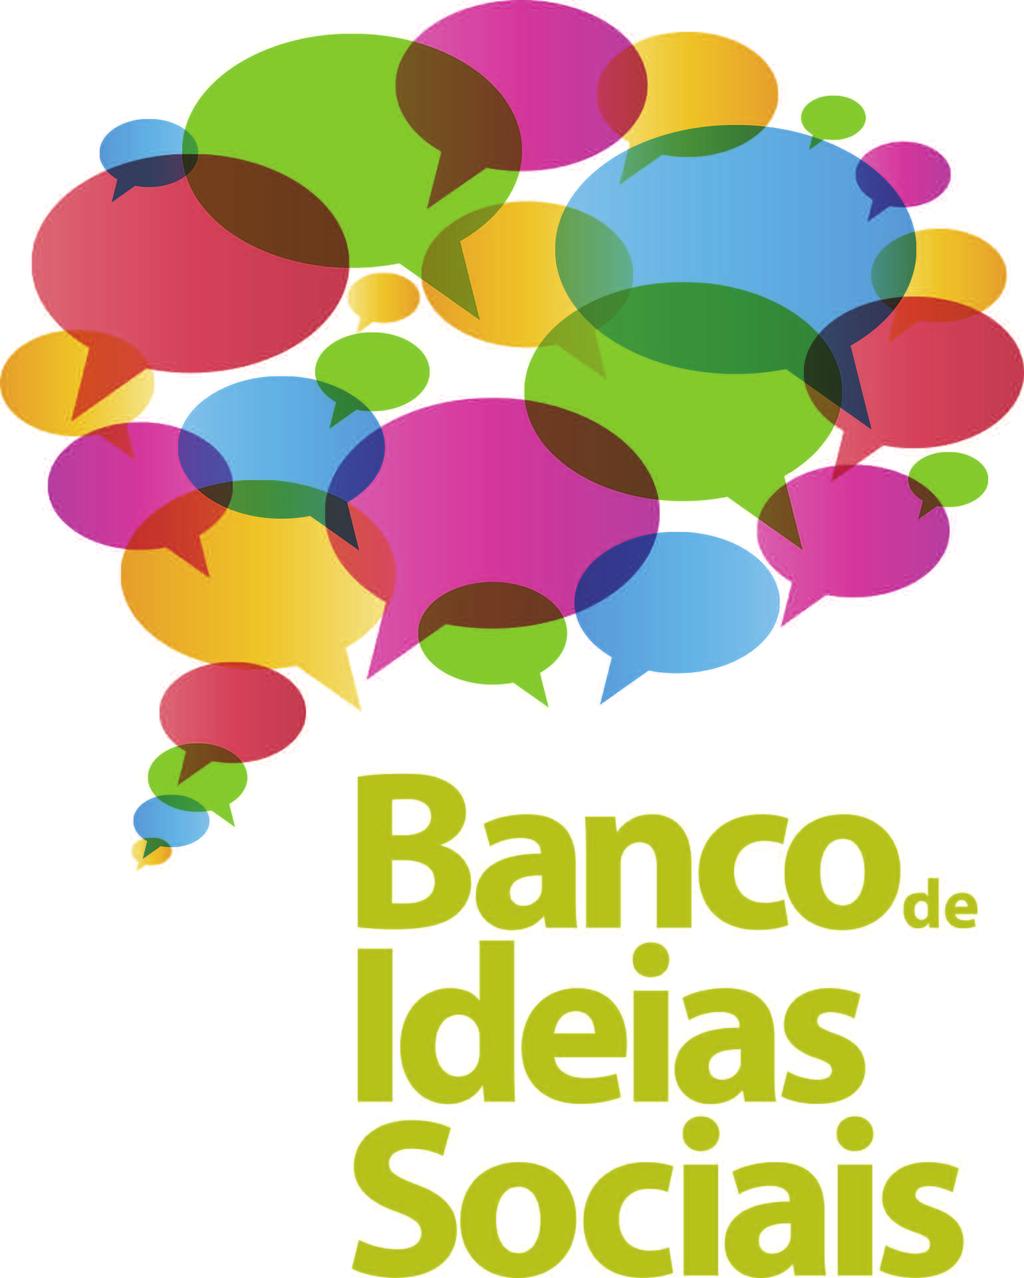 Financiamento de Candidaturas A Junta de Freguesia de Benfica (JFB), no âmbito da sua responsabilidade social e no âmbito da Comissão Social de Freguesia (CSF), irá apoiar financeiramente